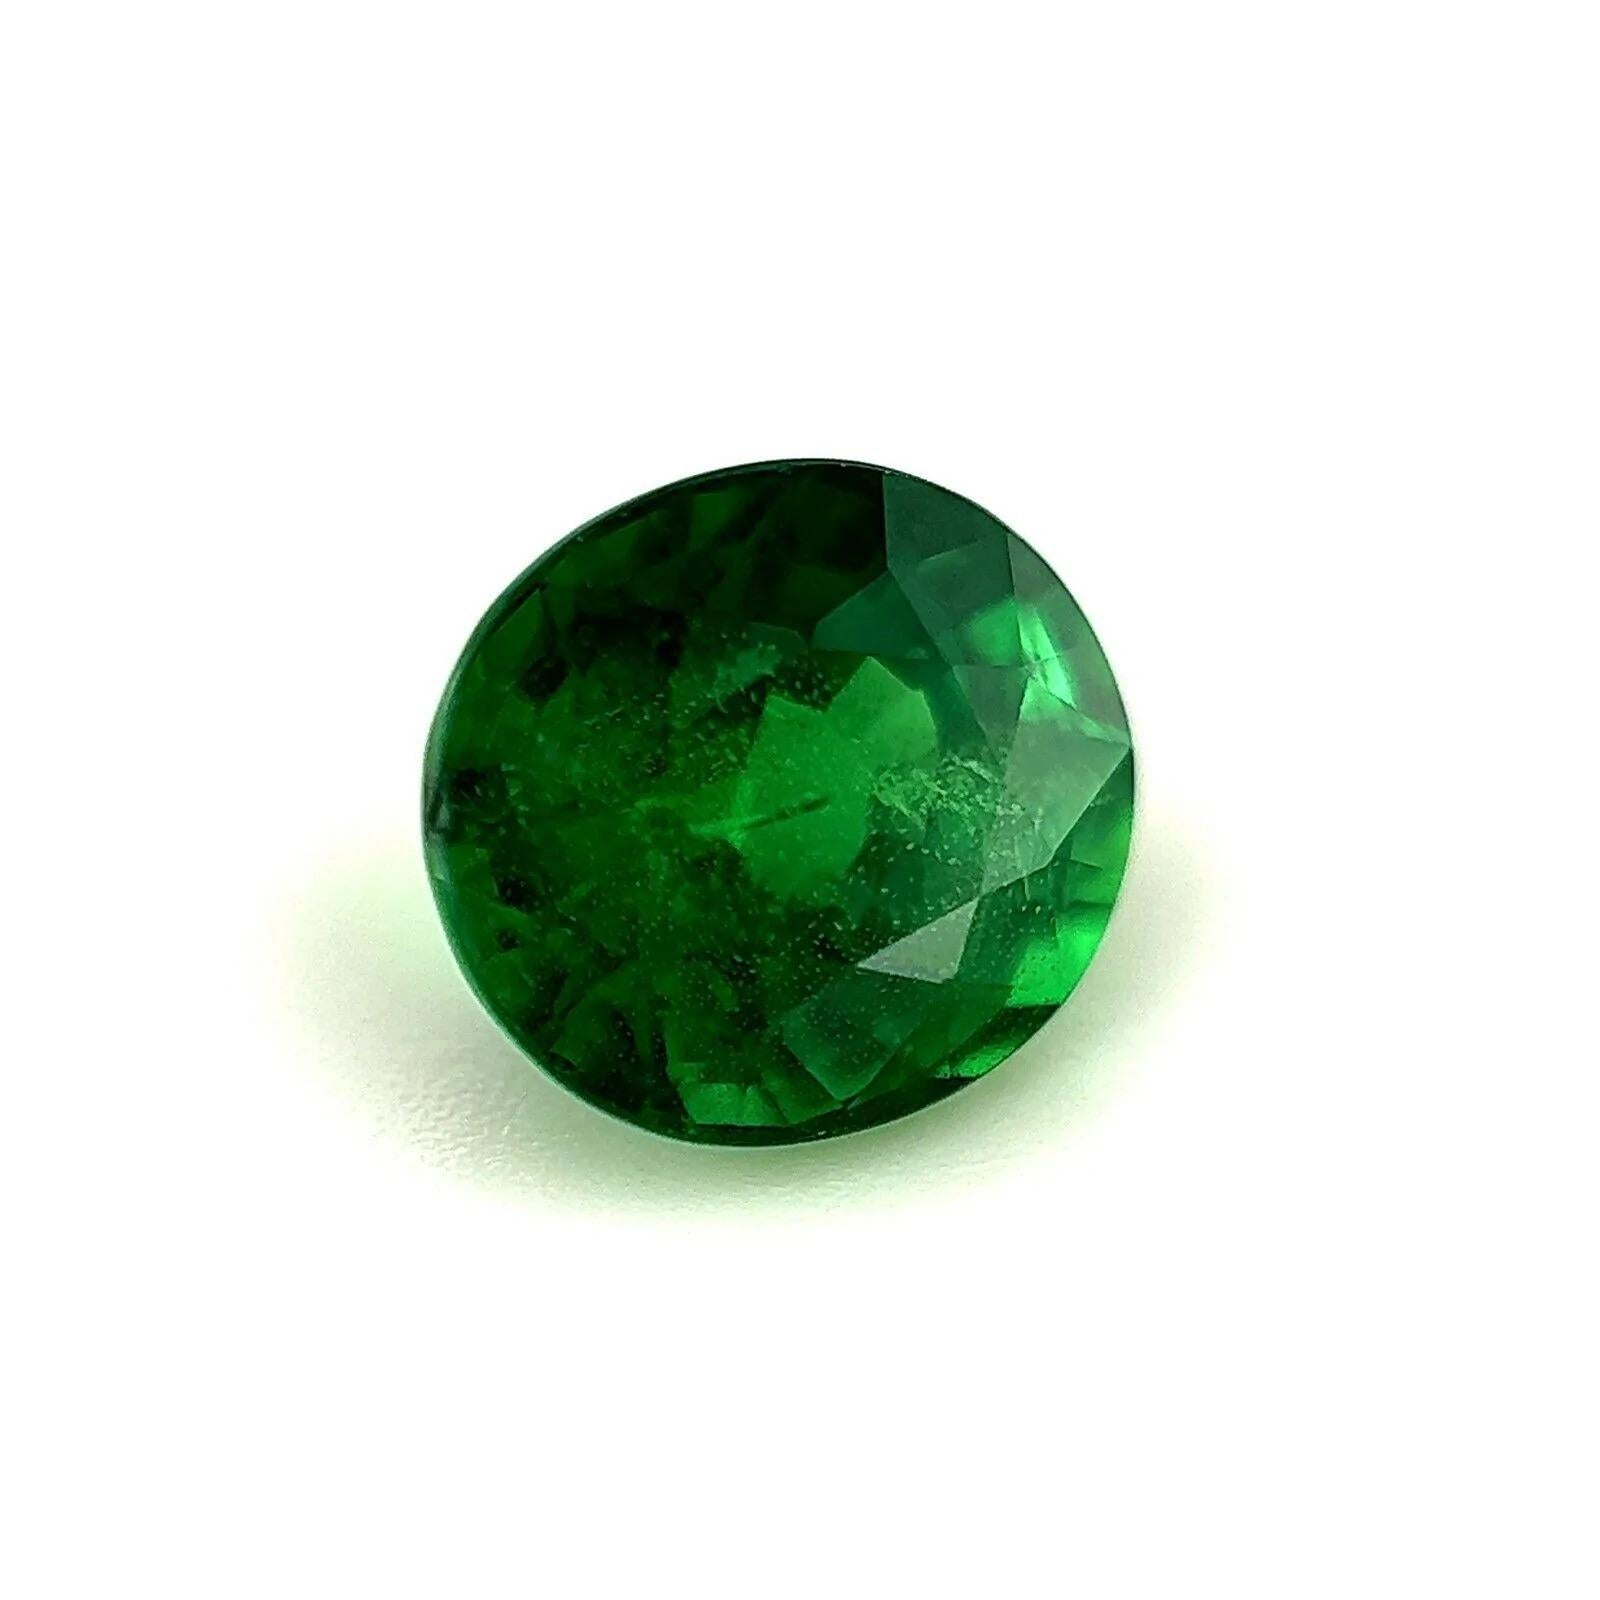 Tsavorite Garnet 2.02ct Fine Colour Vivid Green Oval Cut Gem 7.3x6.5mm

Grenat tsavorite d'un beau vert vif.
2.pierre de 02 carats d'une belle couleur verte vive et d'une bonne clarté. Quelques petites inclusions naturelles visibles en regardant de